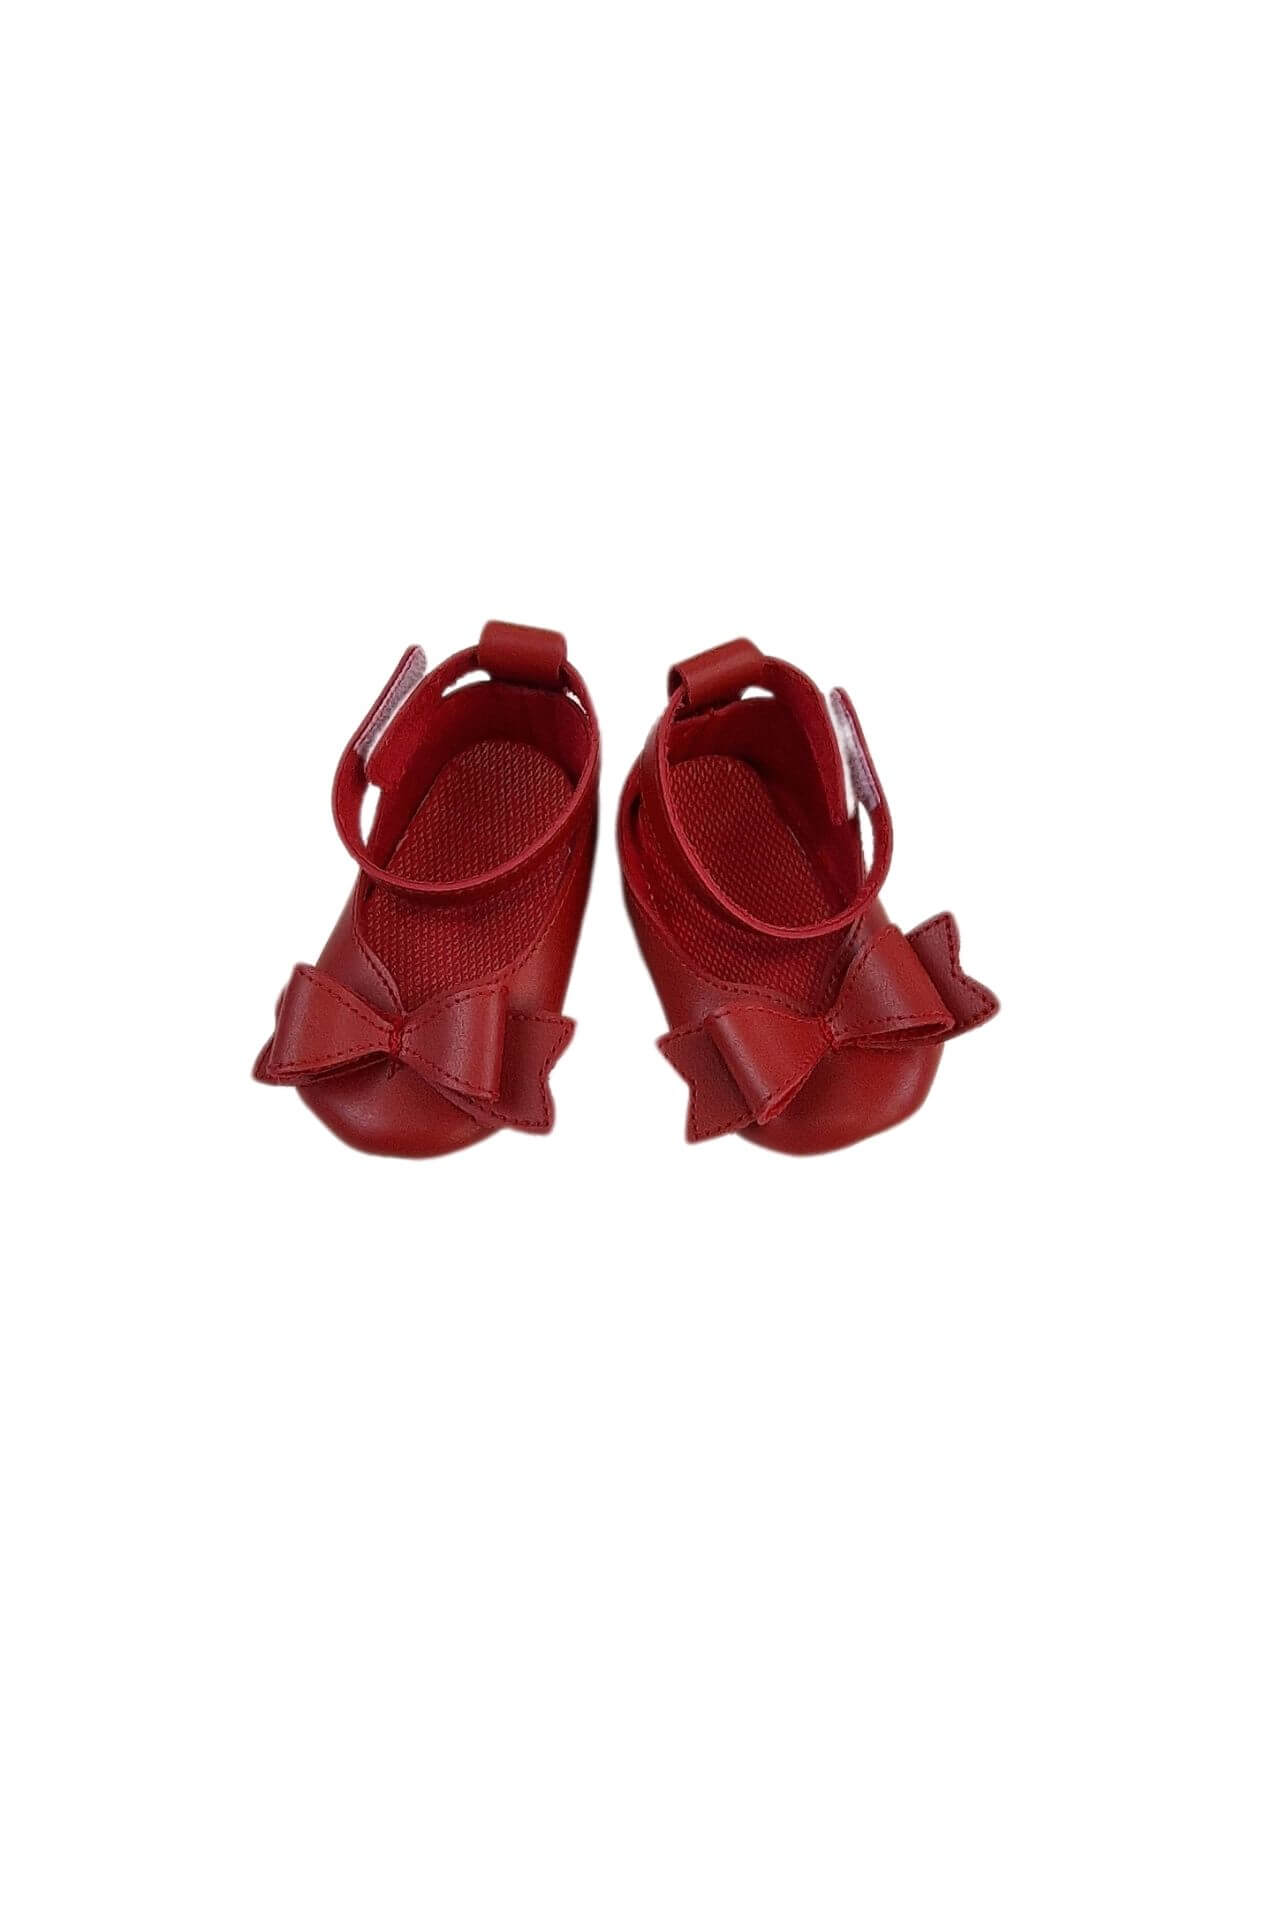 Παπούτσια Αγκαλιάς Δερματίνη Με Φιογκάκι W0338 (3)